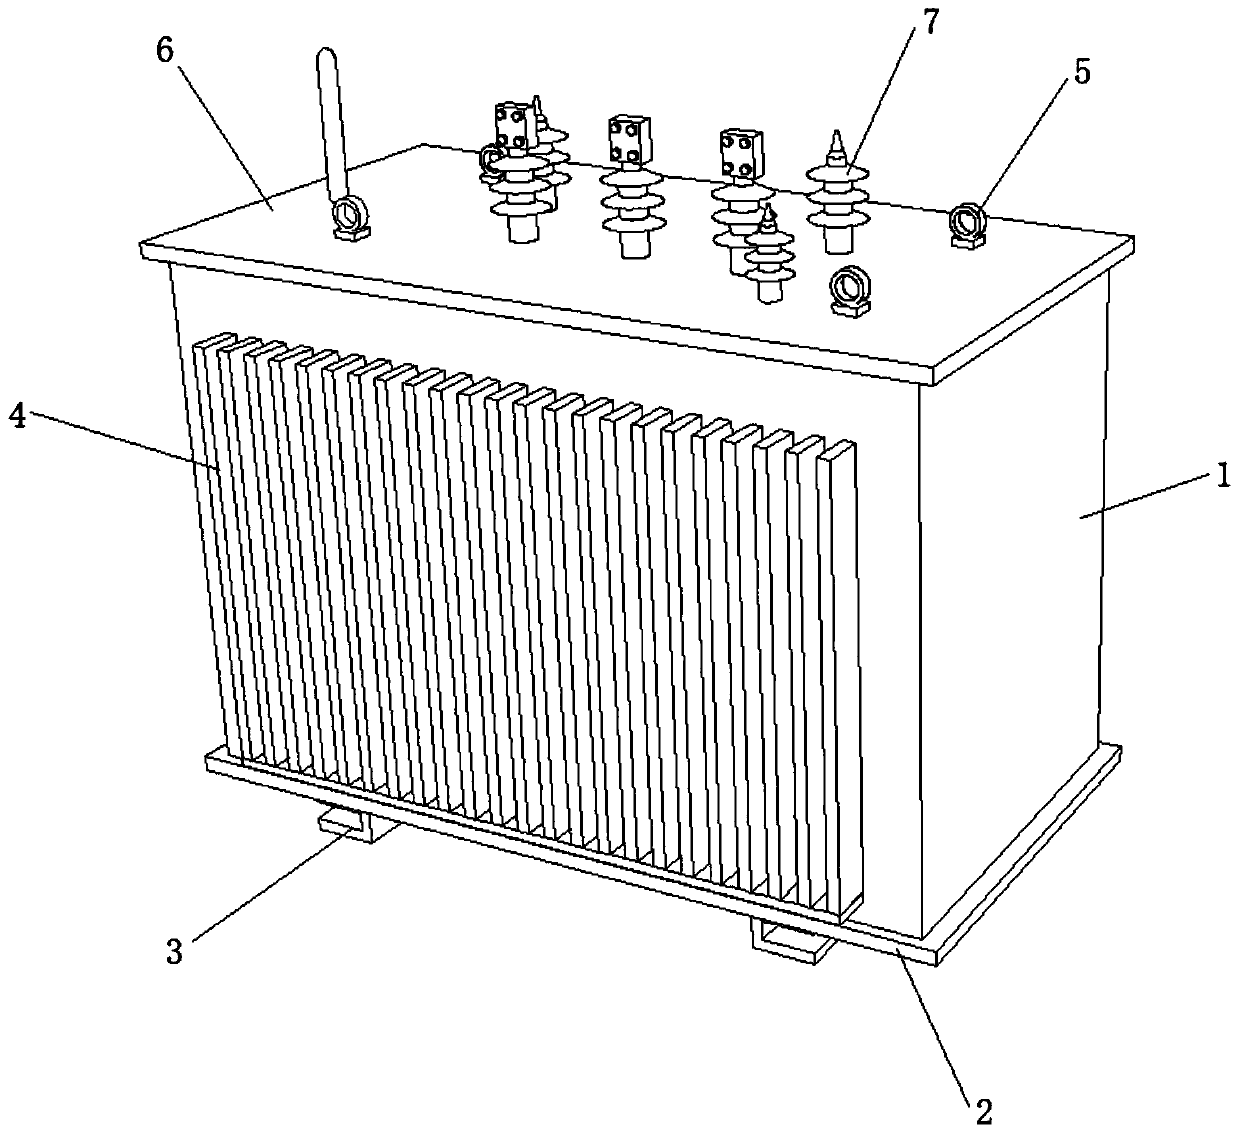 Light-transmitting box-type transformer